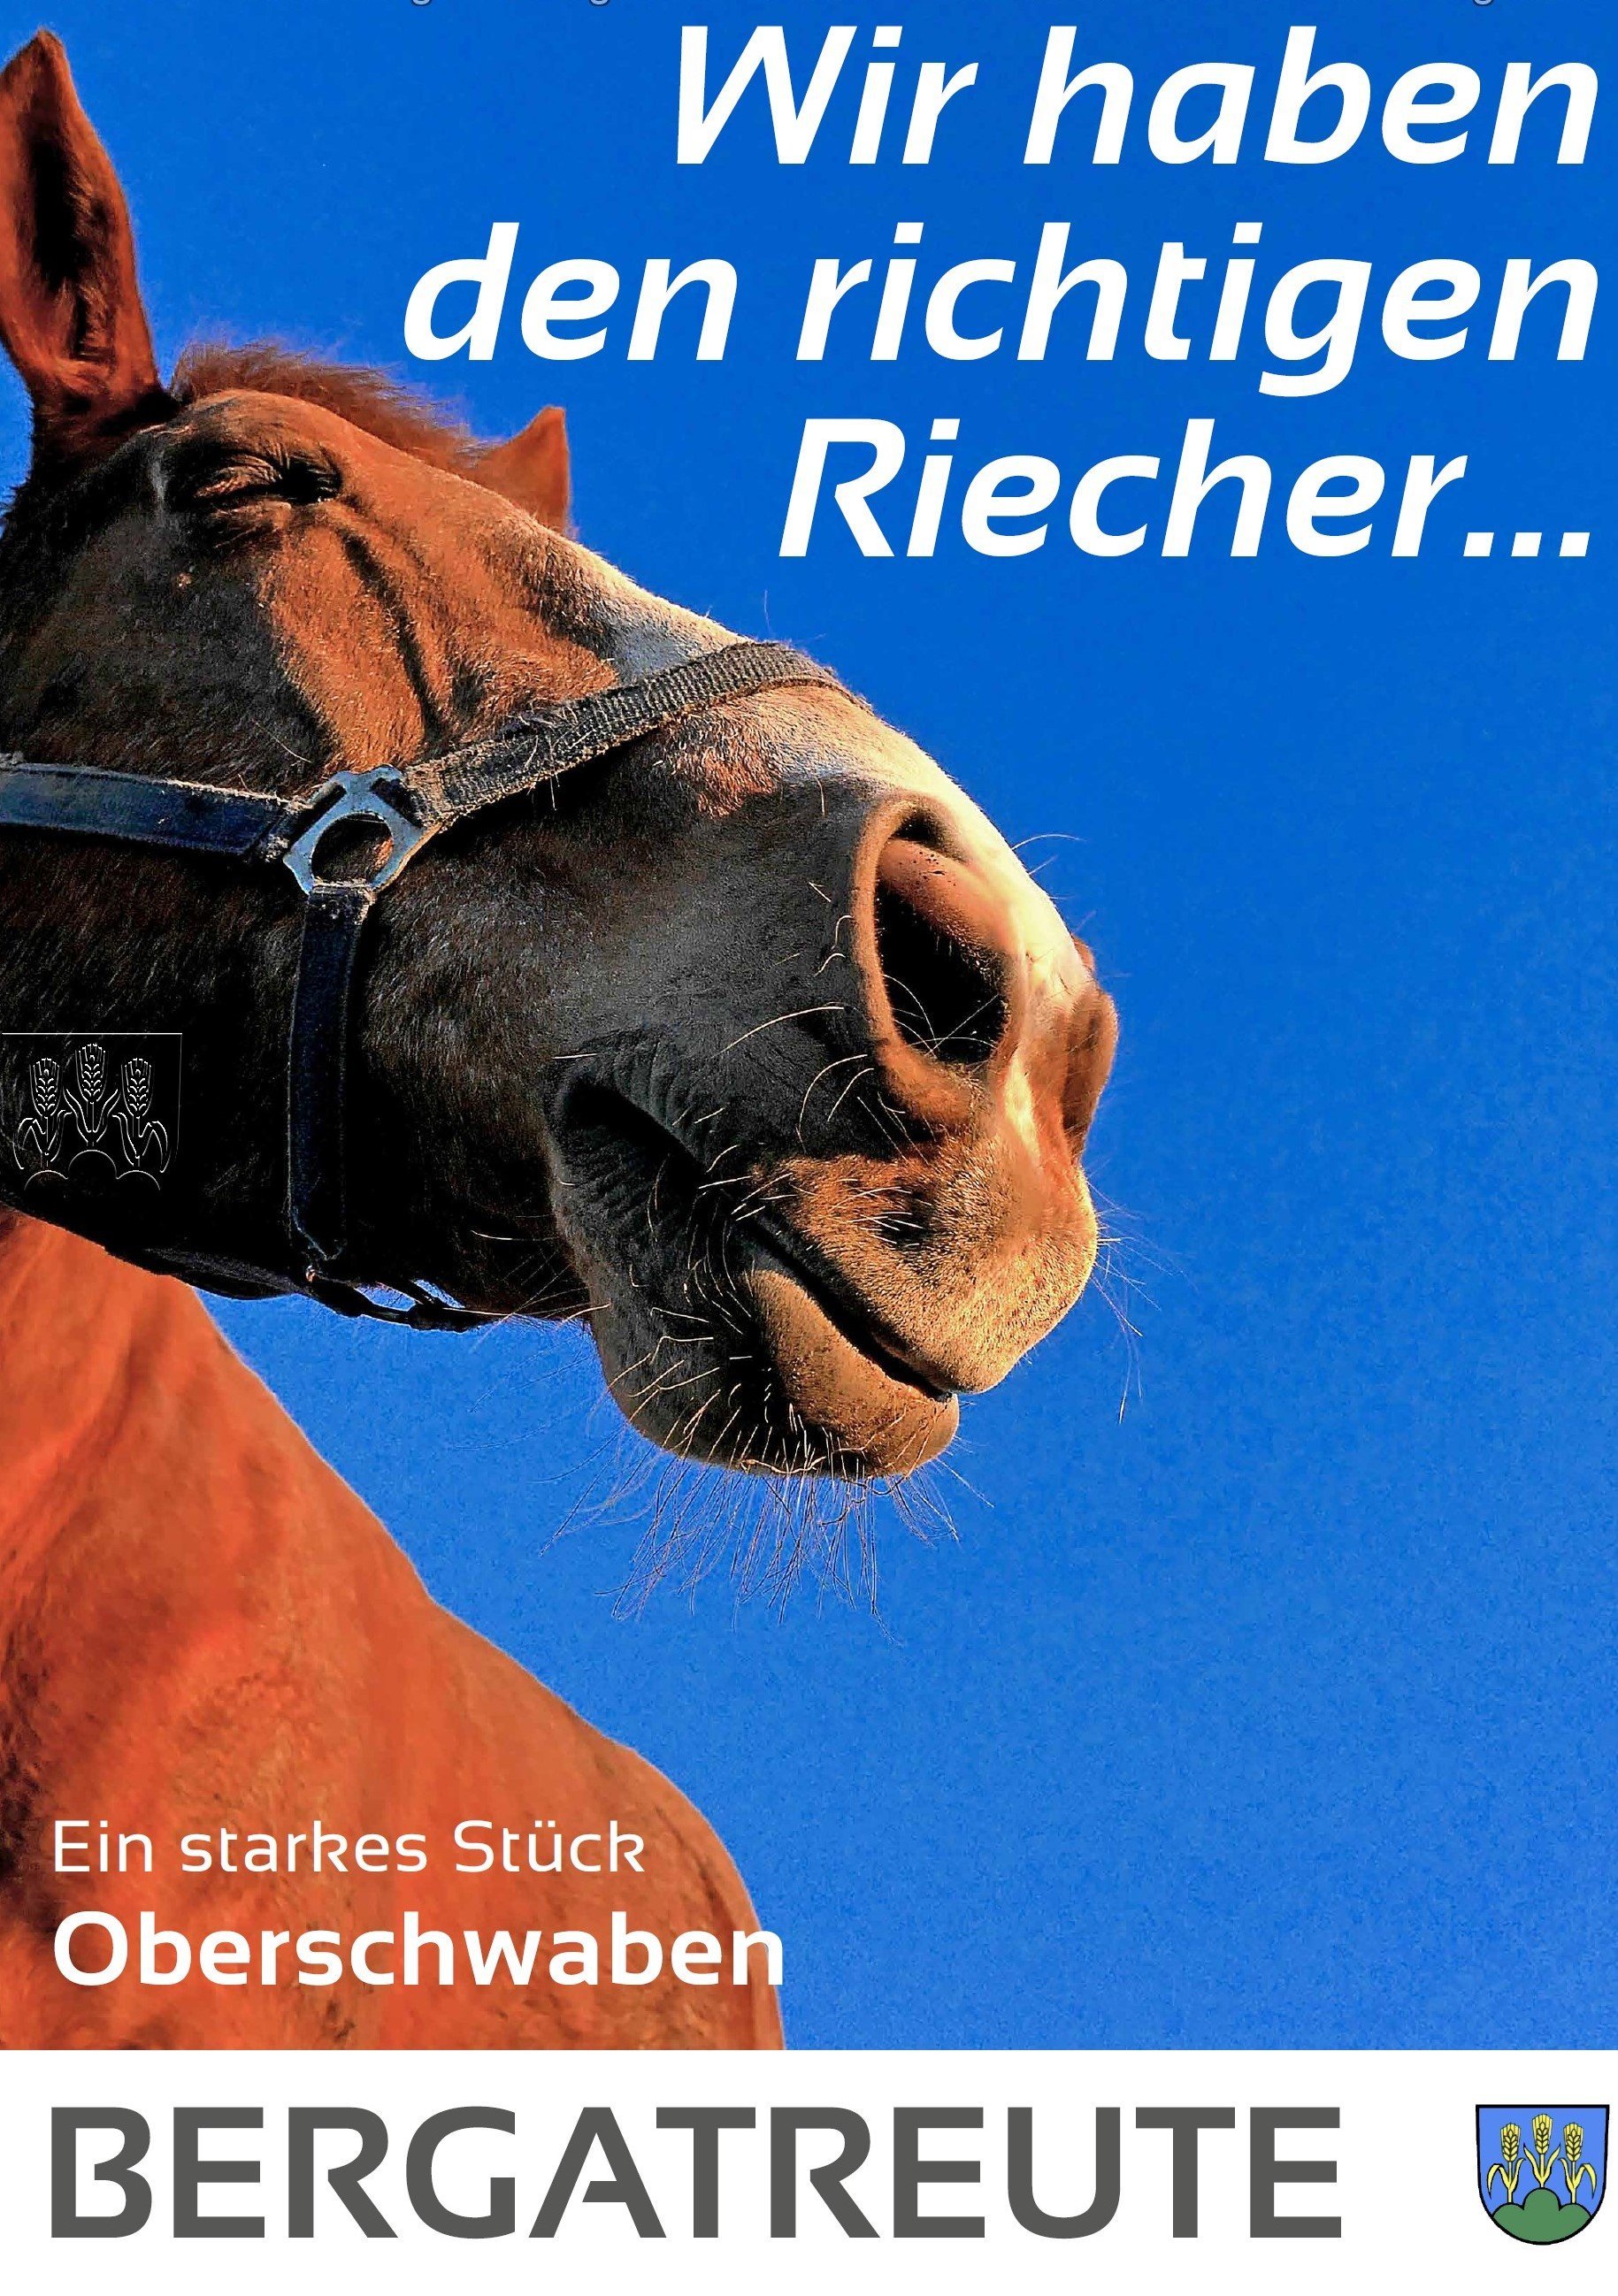  Plakat mit Pferdekopf und Titel: Wir haben den richtigen Riecher... 